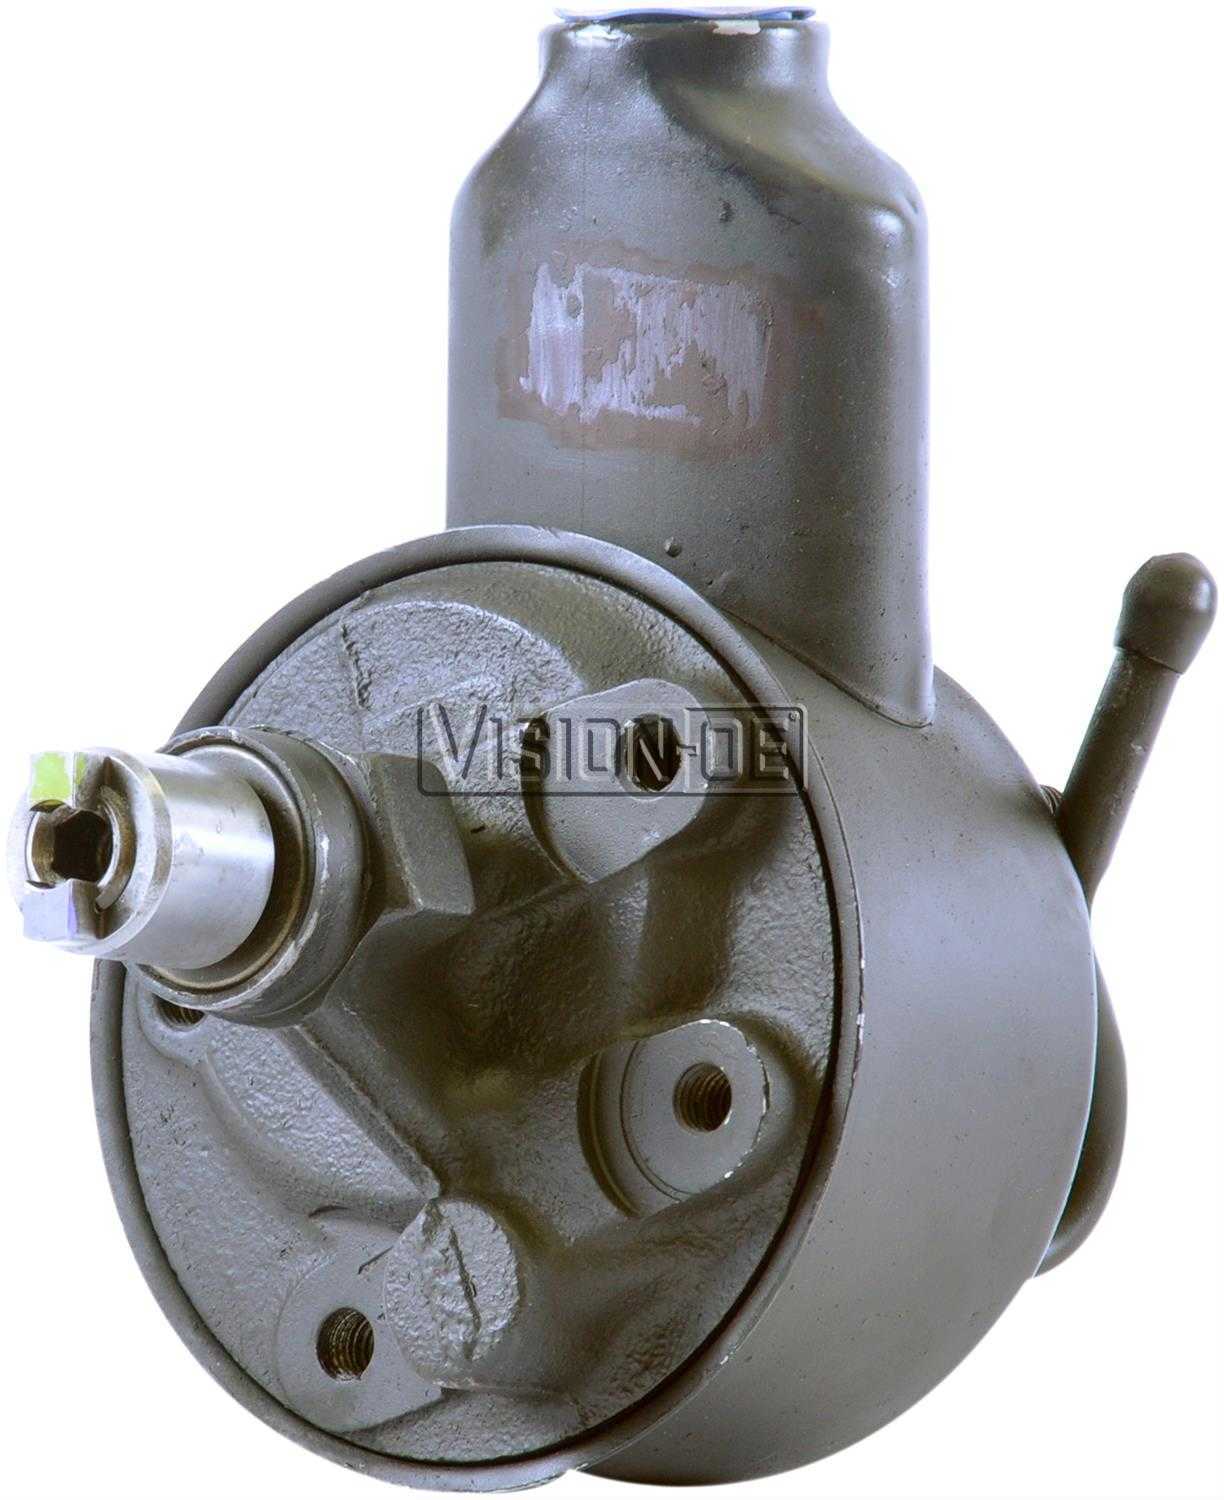 VISION-OE - Reman Power Steering Pump - VOE 731-2214